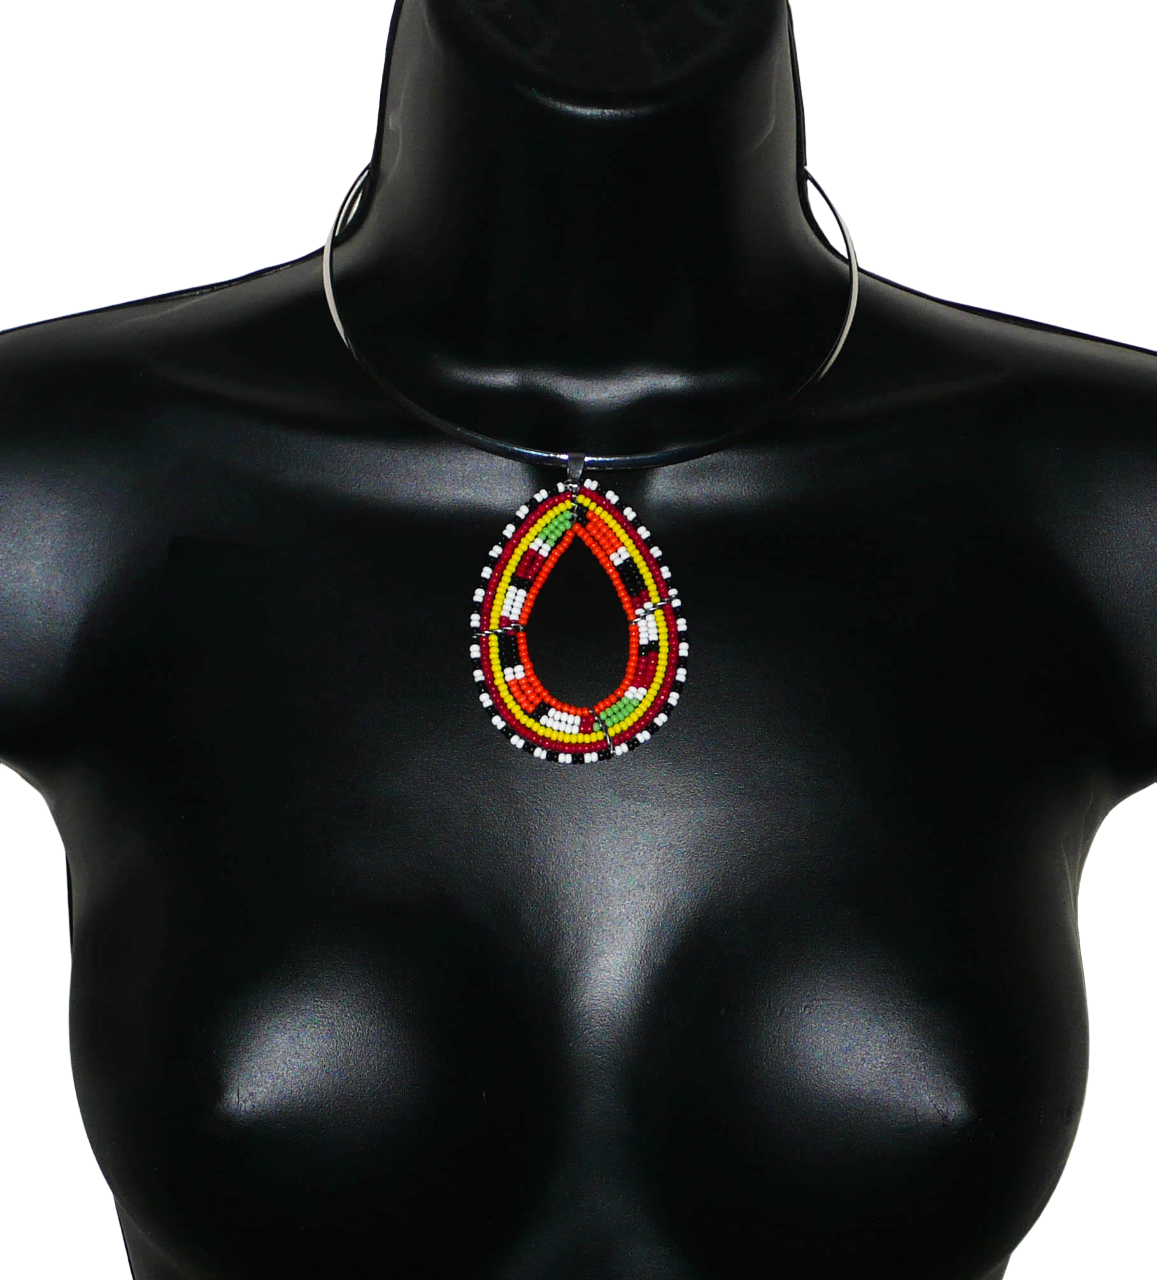 Collier africain composé d'un ras-de-cou en laiton argenté orné d'un long et large pendentif à motifs ethniques fait de perles de rocaille orange et multicolores enfilées sur six rangées de fils de fer montés en forme de goutte. Il mesure 20,5 cm de long (de la nuque à la base du pendentif), le tour de cou en laiton a une circonférence de 42,5 cm et un diamètre de 13,5 cm ; le pendentif mesure 7 cm de long et 5 cm de large. Timeless Fineries